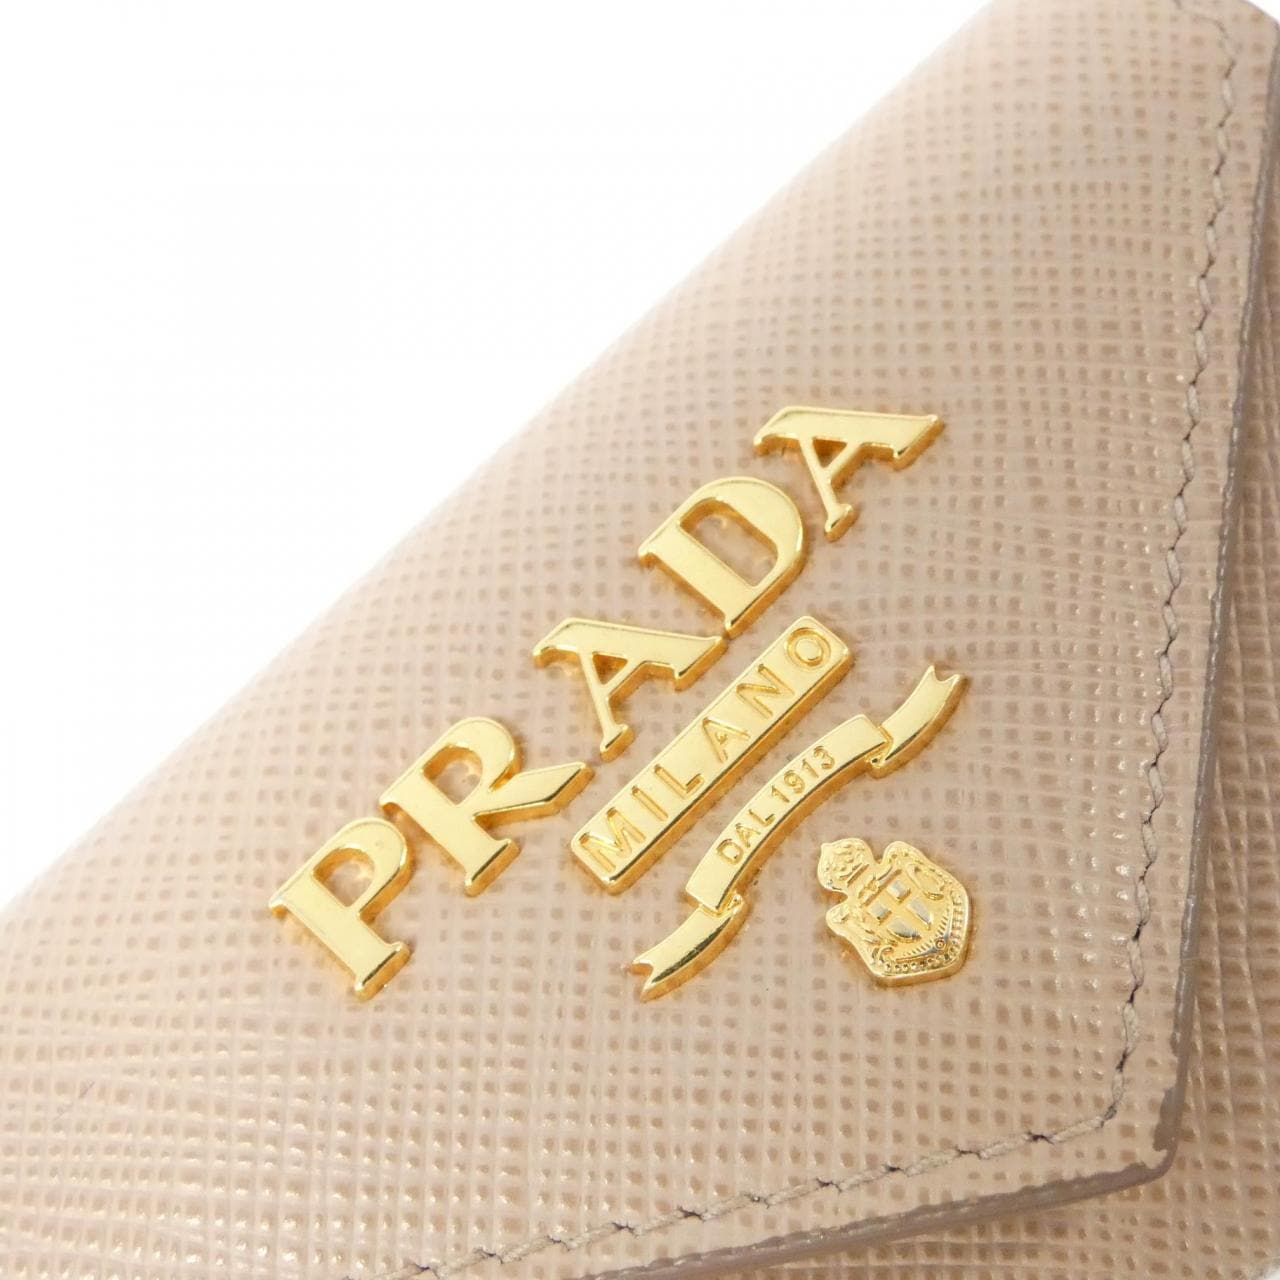 プラダ 1MH021 財布